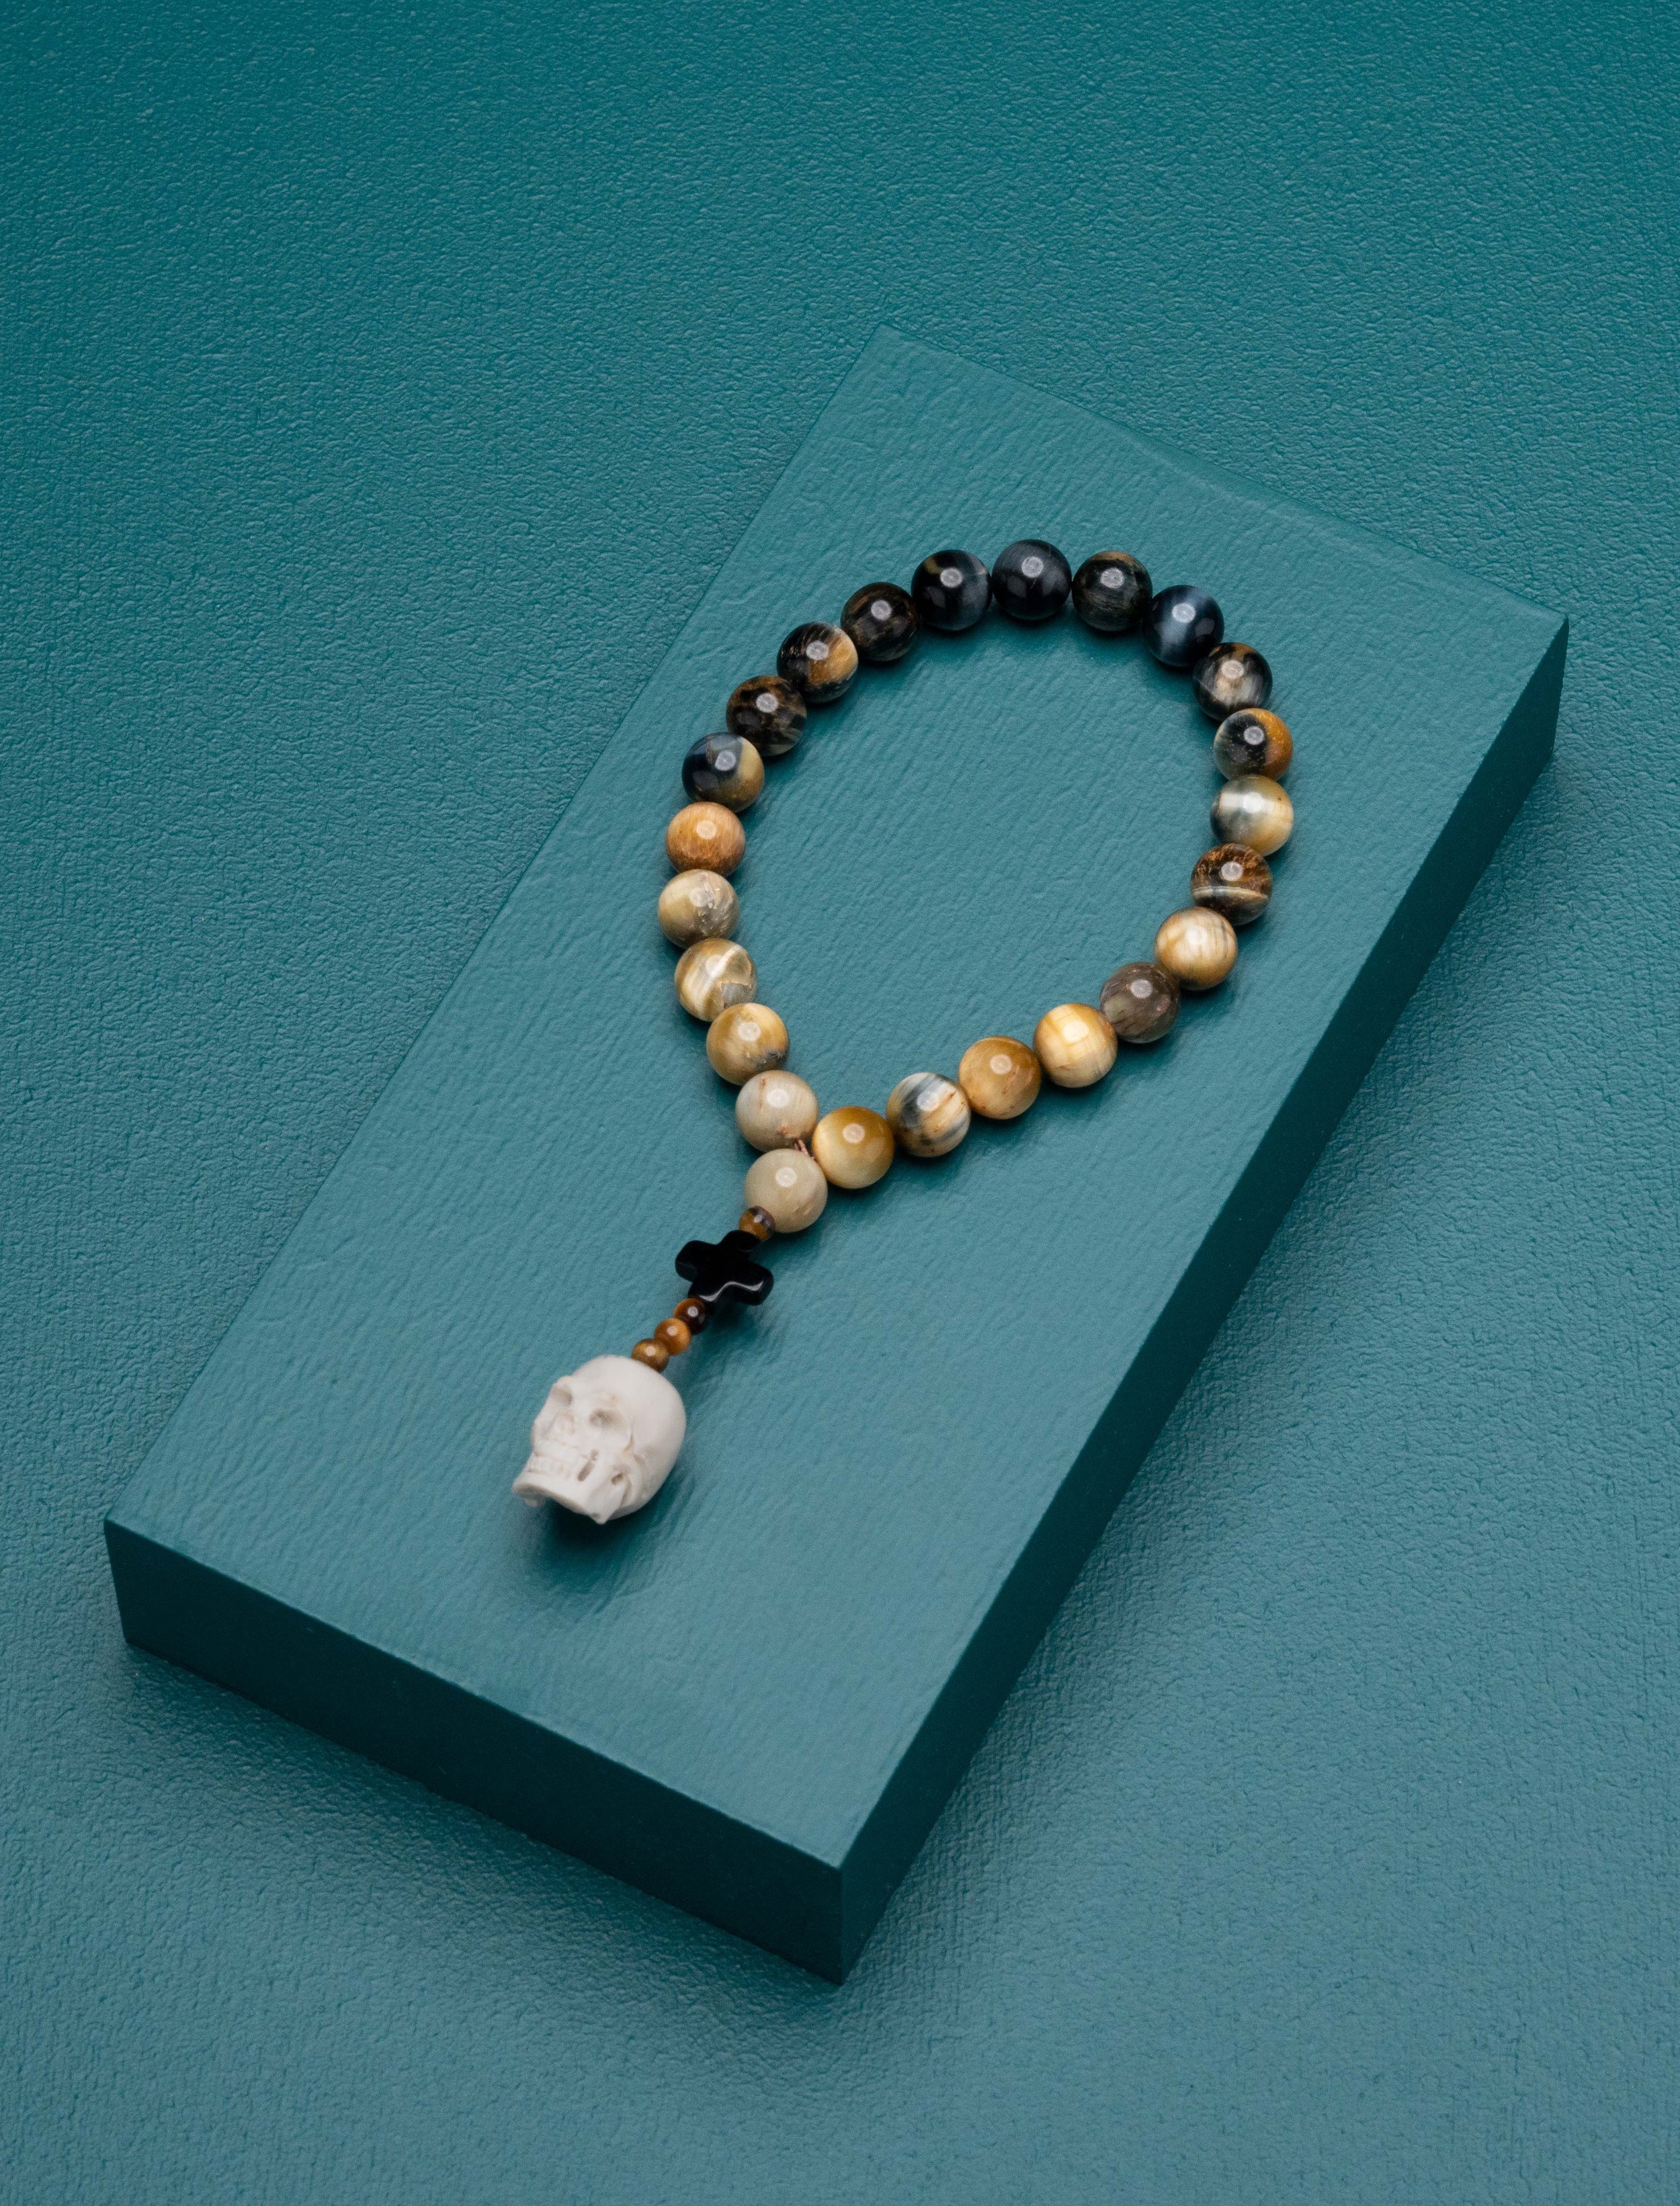 Caim Worry Beads - designed by Jock Zonfrillo — Caim Worry Beads